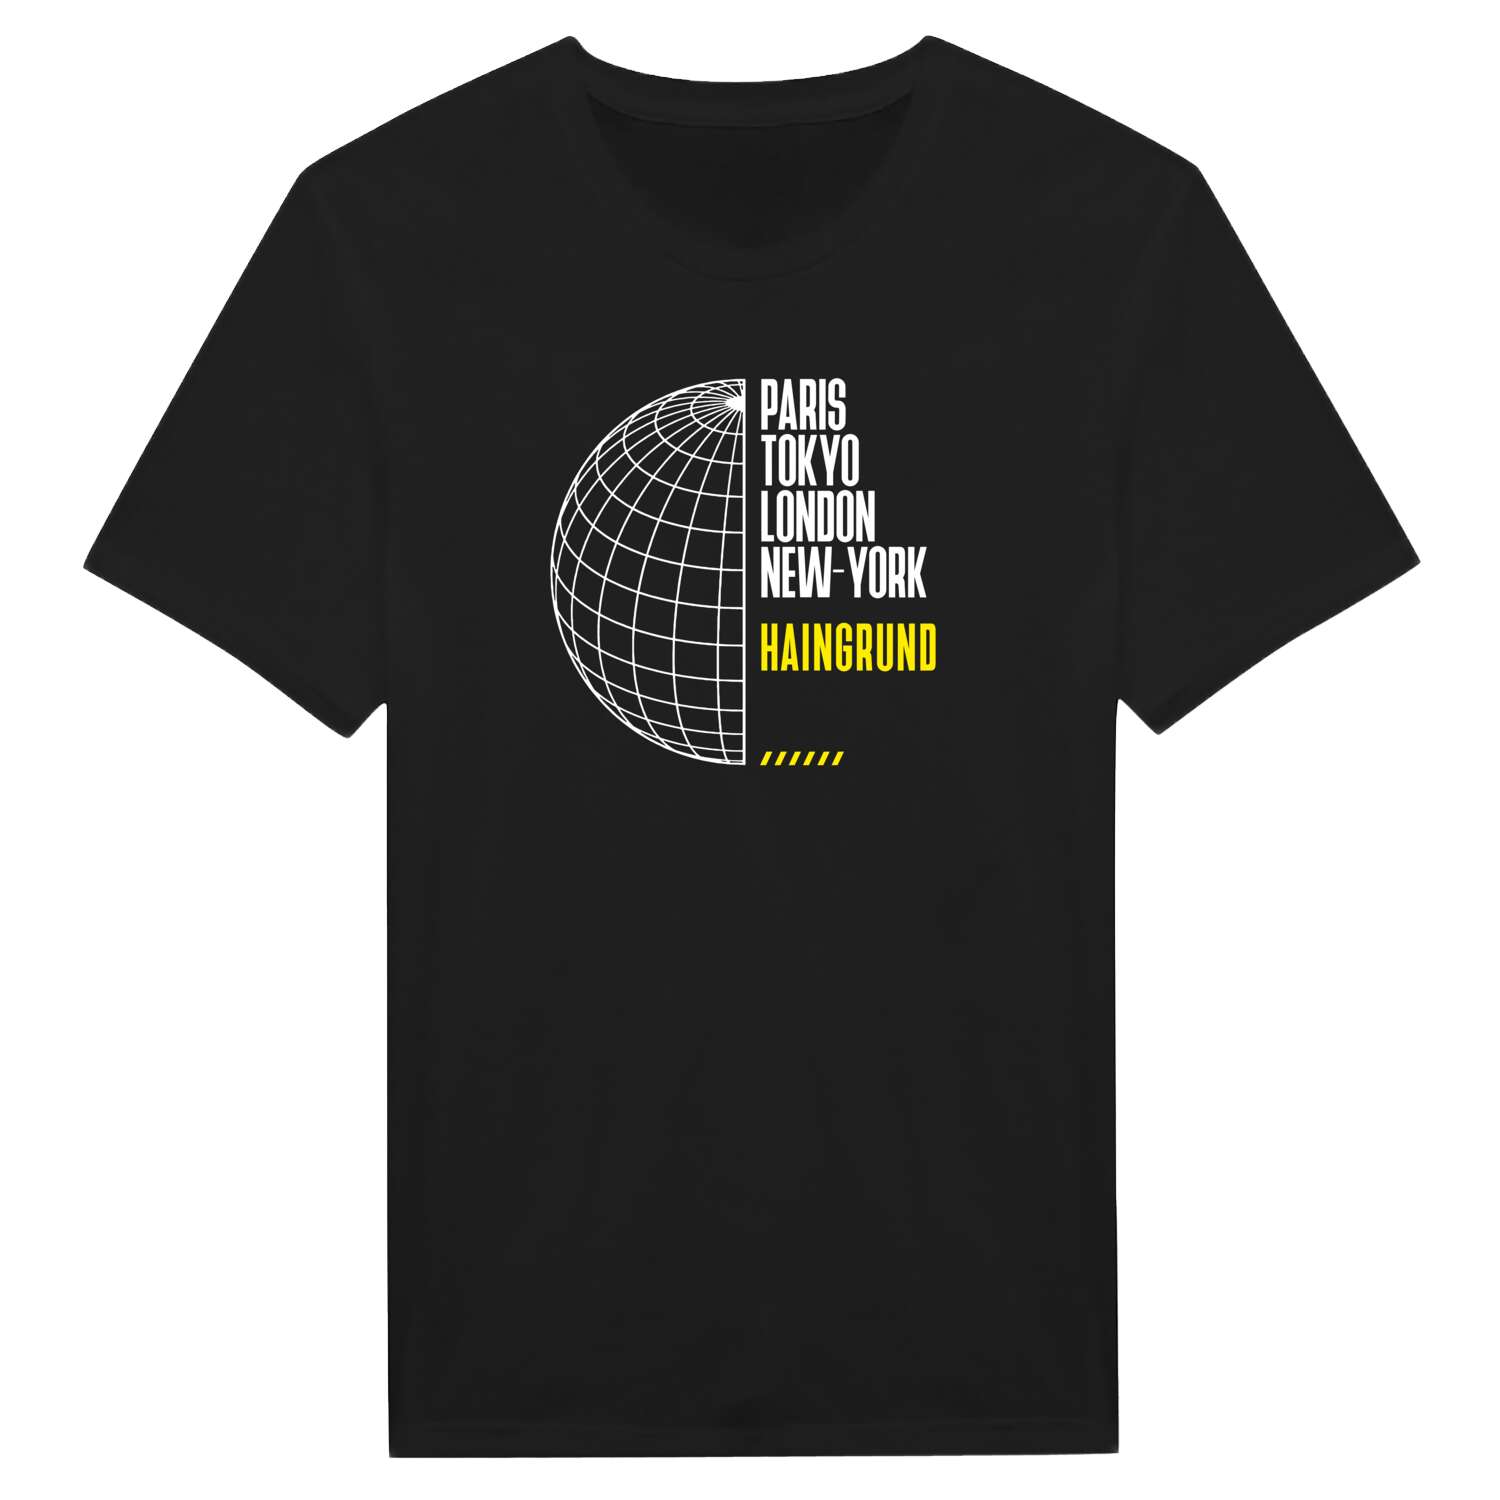 Haingrund T-Shirt »Paris Tokyo London«